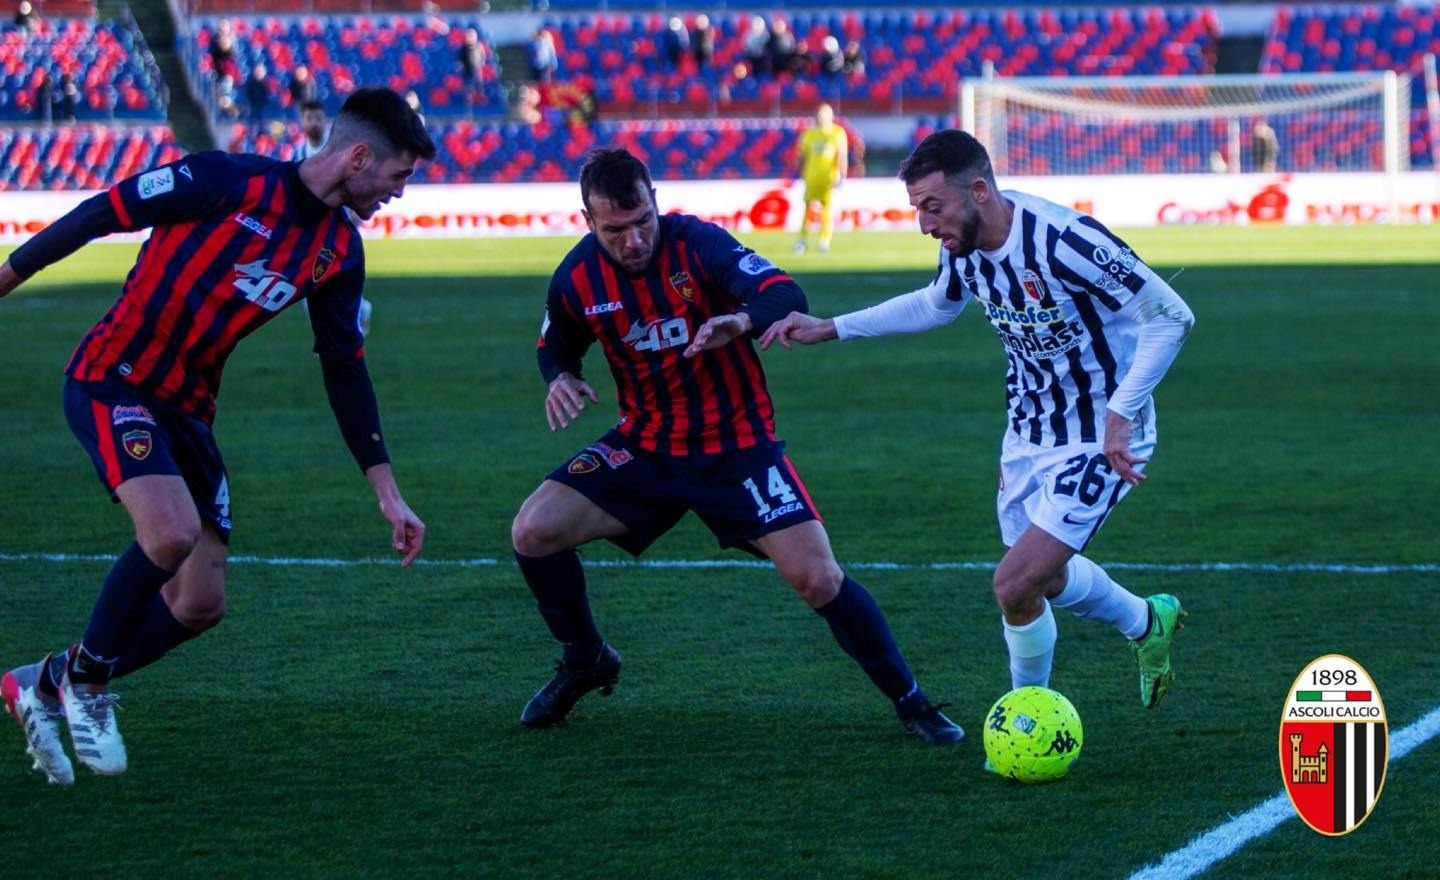 Serie B: Cittadella-Cosenza 1-1 nel recupero, l’Ascoli resta ottavo in classifica